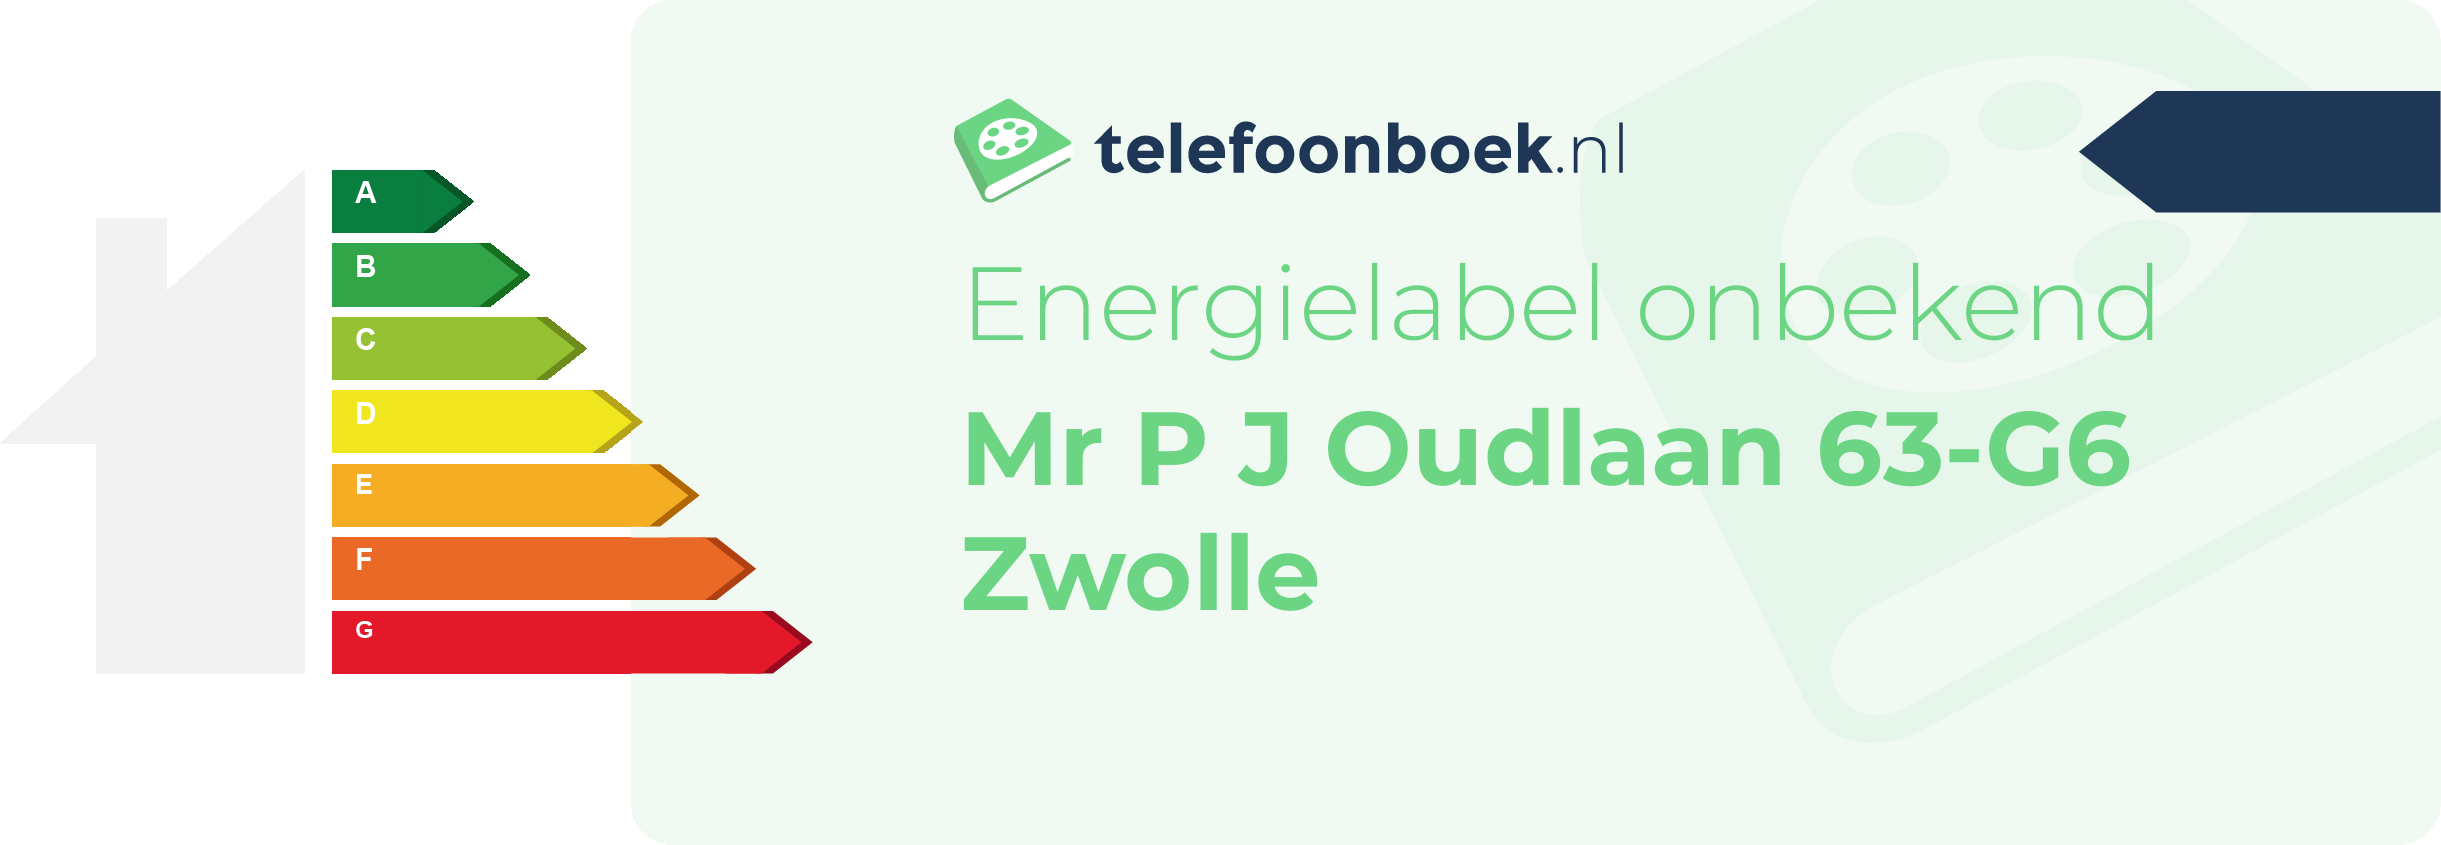 Energielabel Mr P J Oudlaan 63-G6 Zwolle